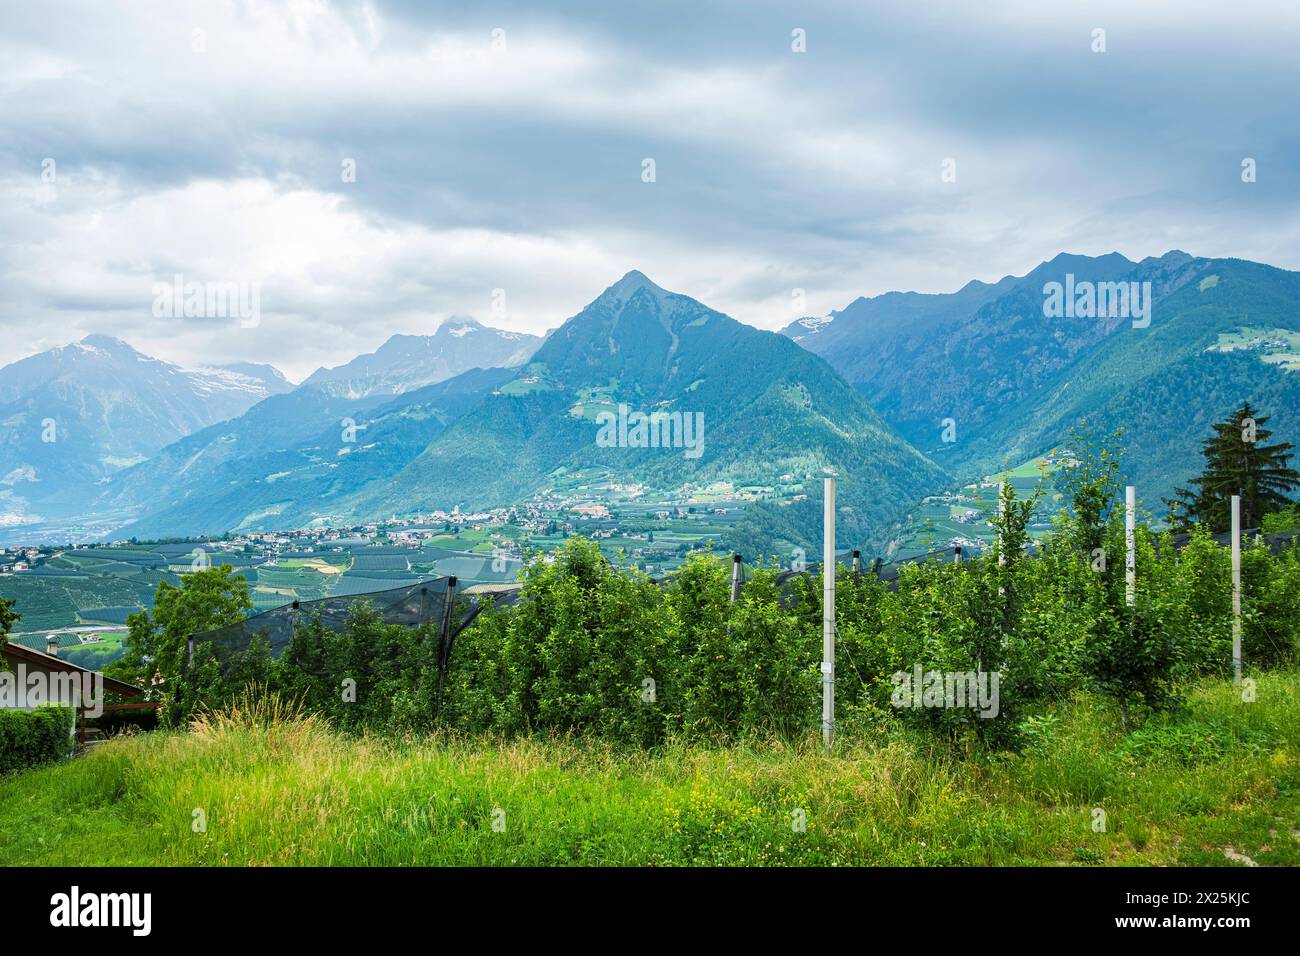 Obstplantagen, Schenna, Burggrafenamt, Südtirol, Italien Obstplantagen, eingebettet in die malerische alpine Landschaft oberhalb von Meran auf dem Gem Stock Photo